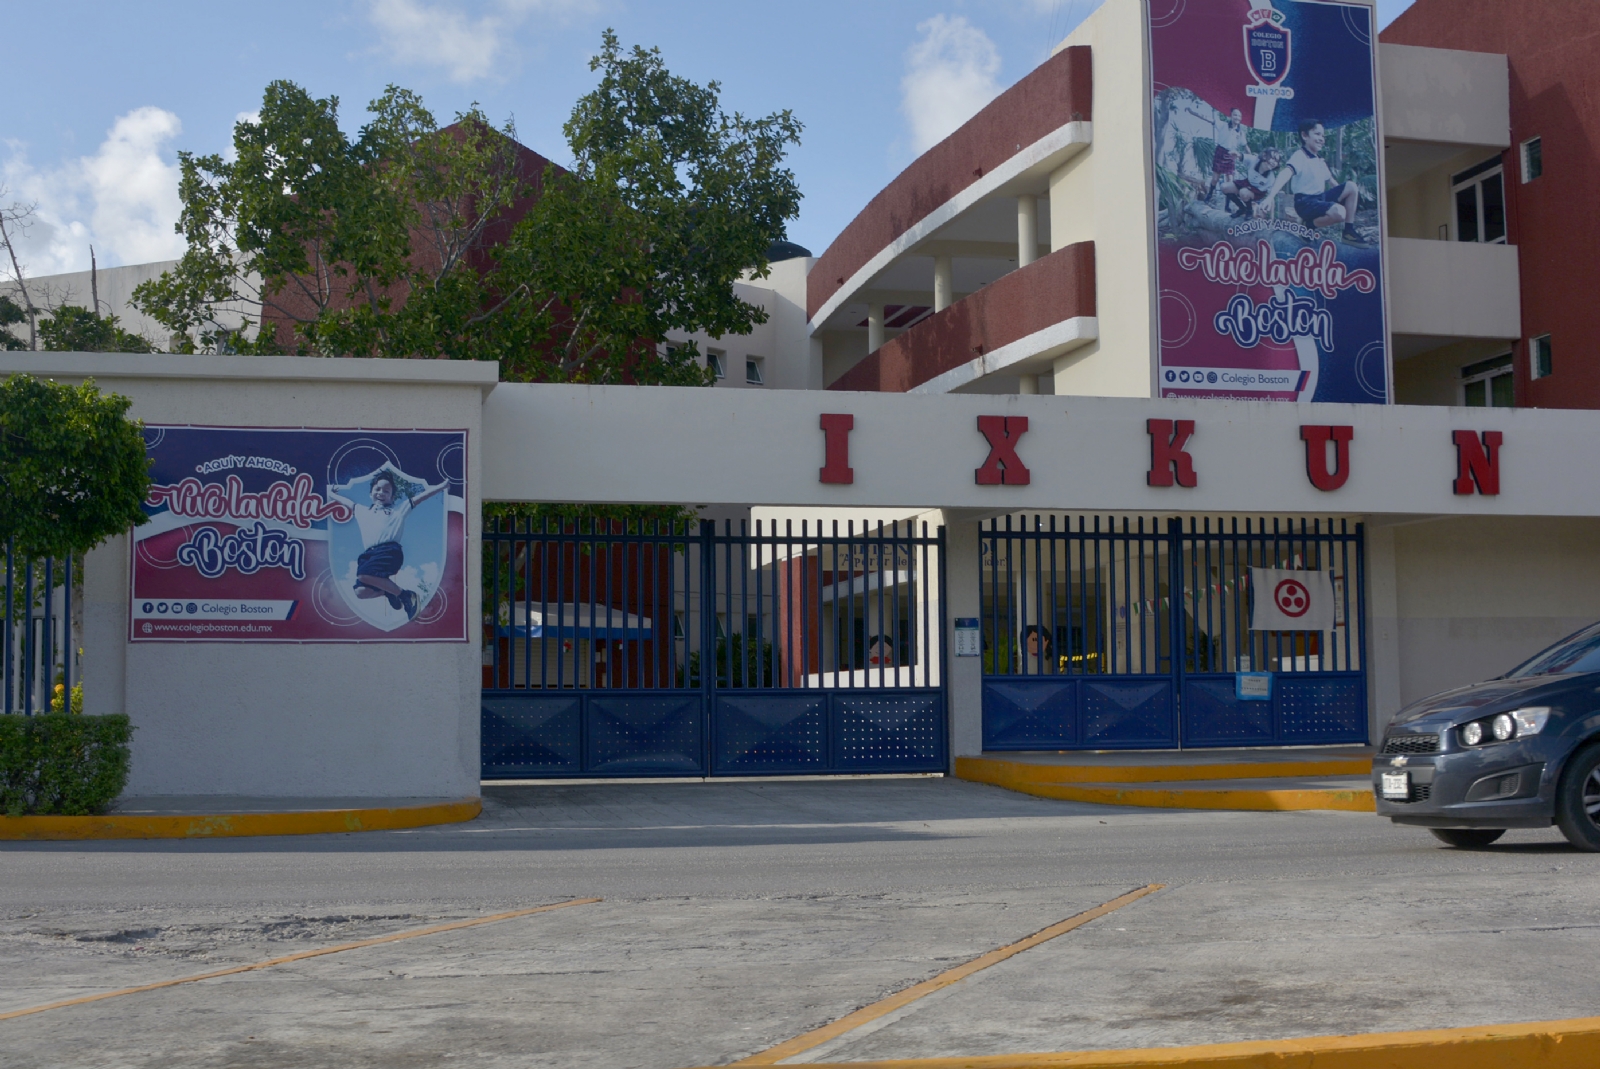 Escuelas privadas aumentan colegiaturas en Quintana Roo; SEQ niega autorización